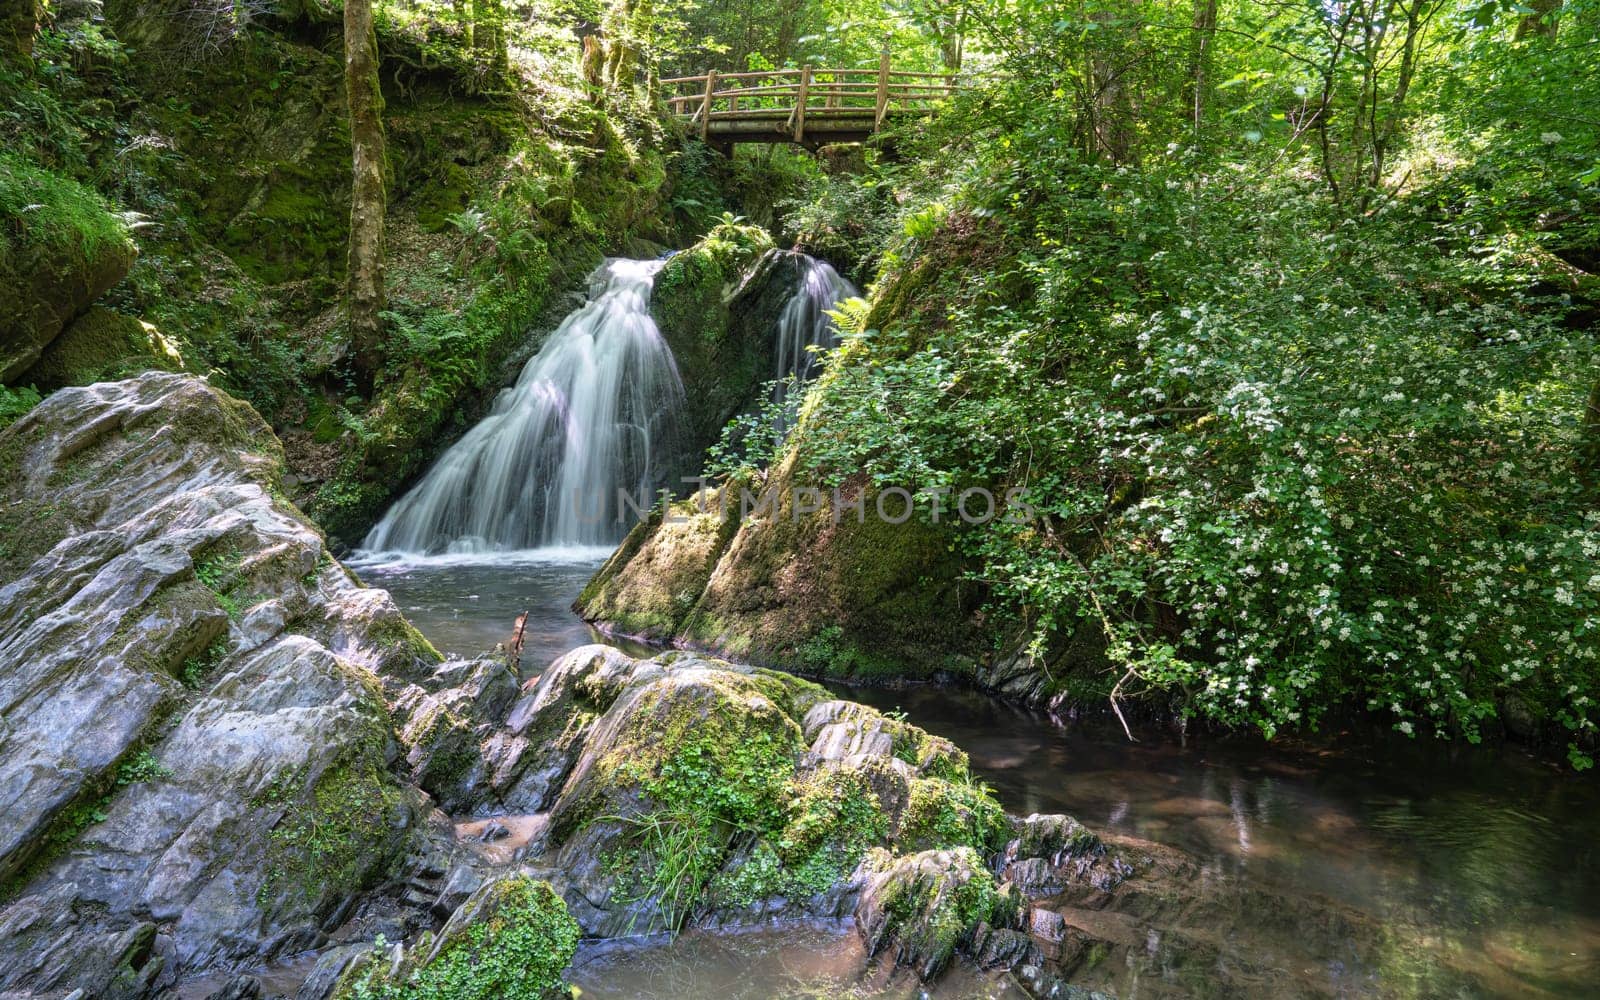 Endert creek, Eifel area, Rhineland-Palatinate, Germany by alfotokunst